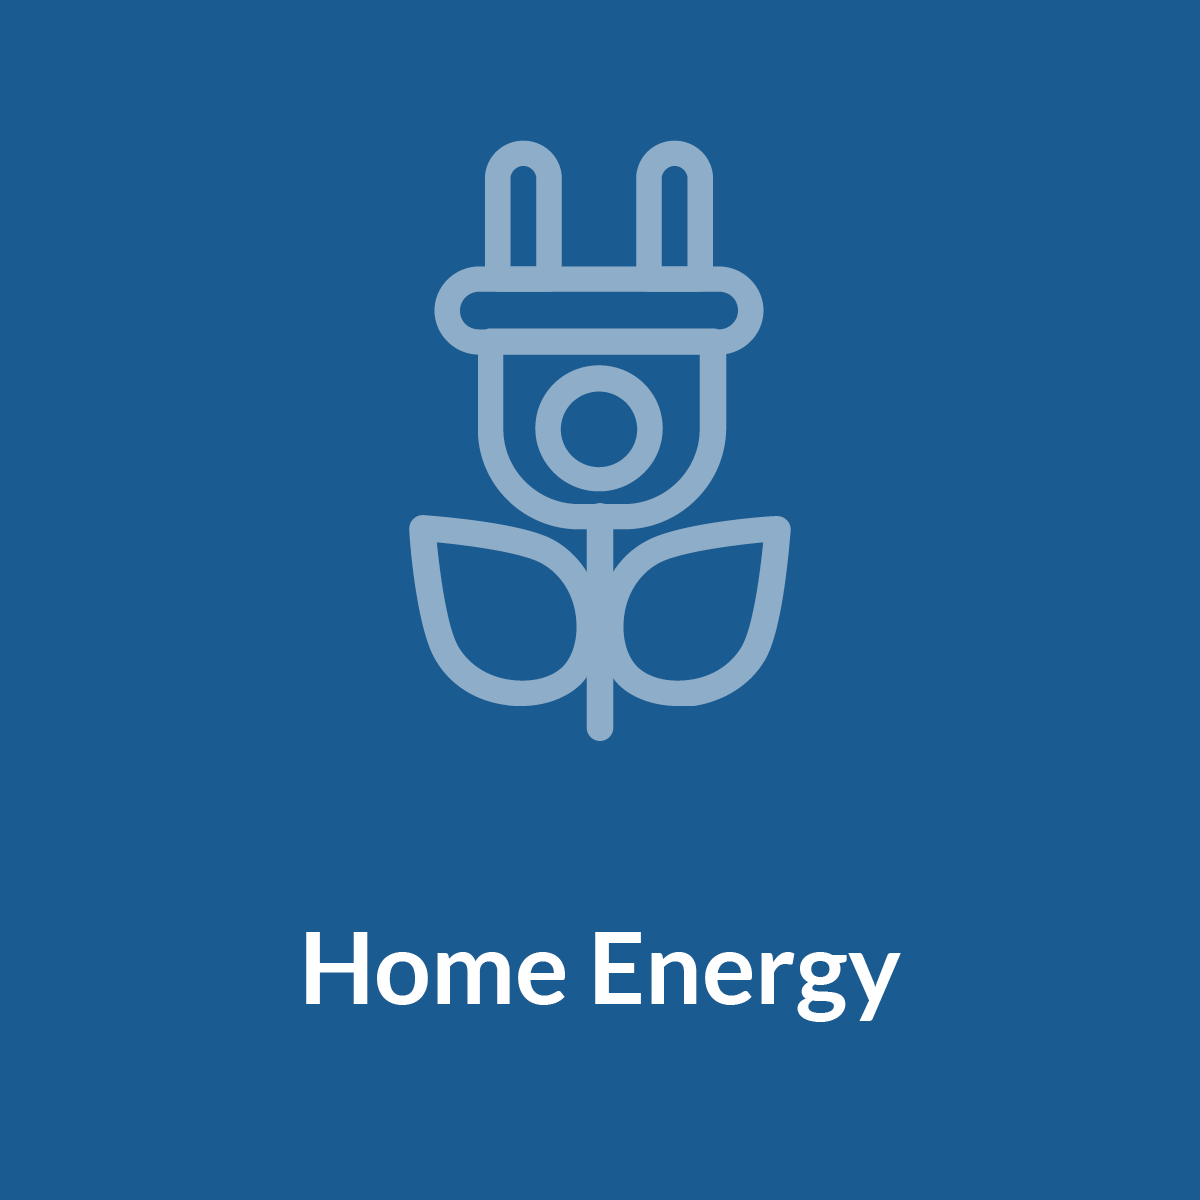 Home/Energy Icon